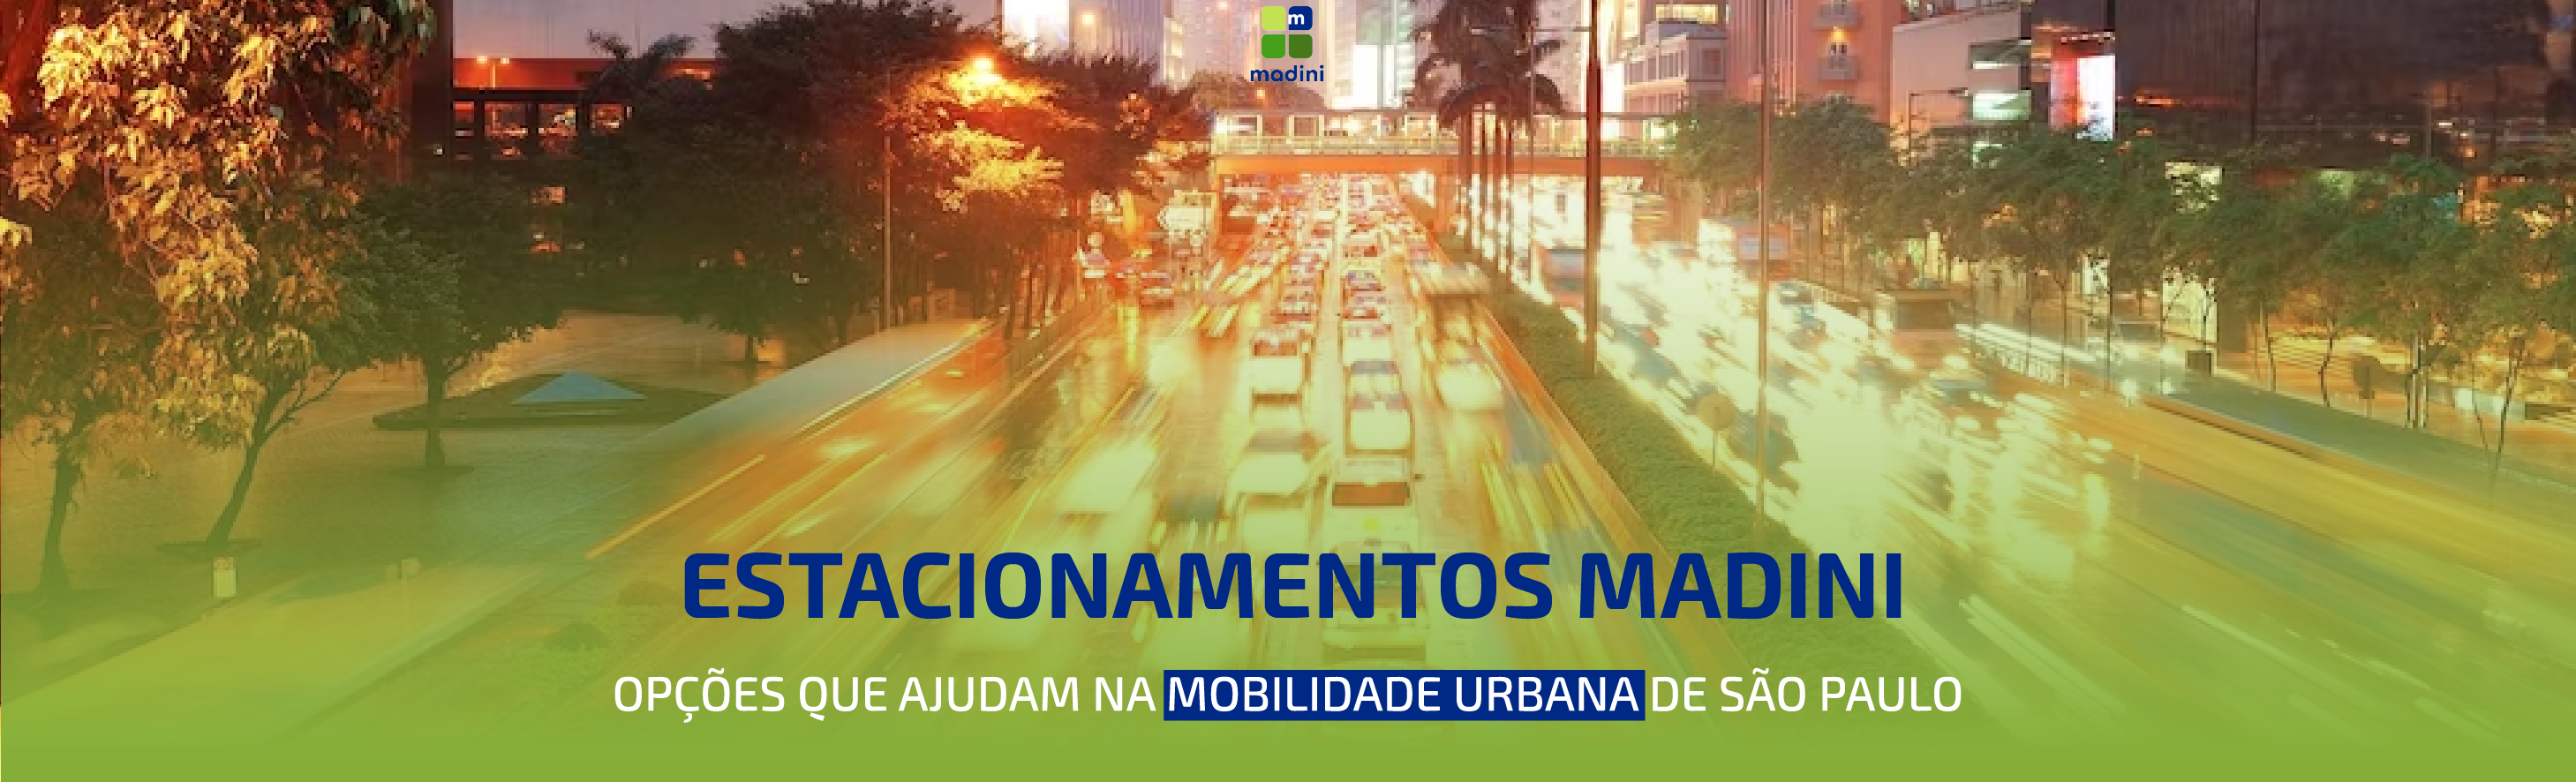 Estacionamentos Madini – Opções que ajudam na mobilidade urbana de São Paulo